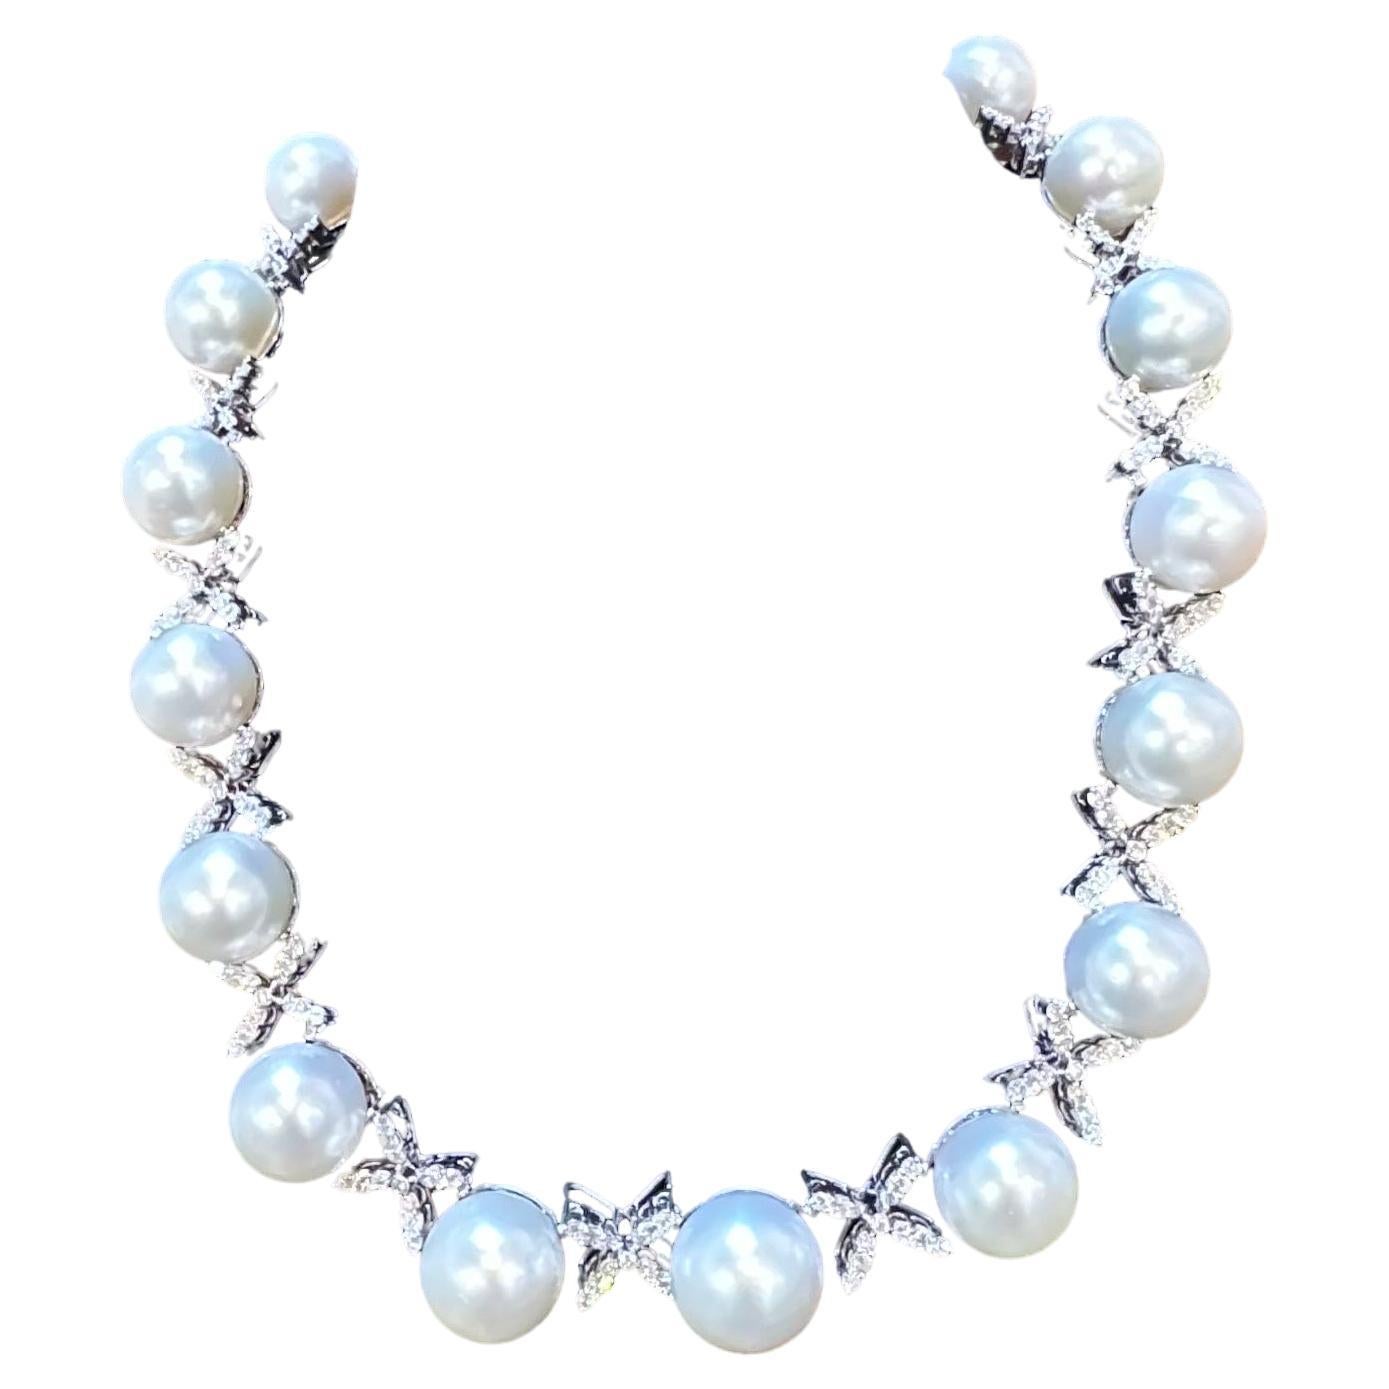 Taille ronde Classic White 12-17 MM  Collier de perles de culture des mers du Sud et de diamants de 20 ct, 17